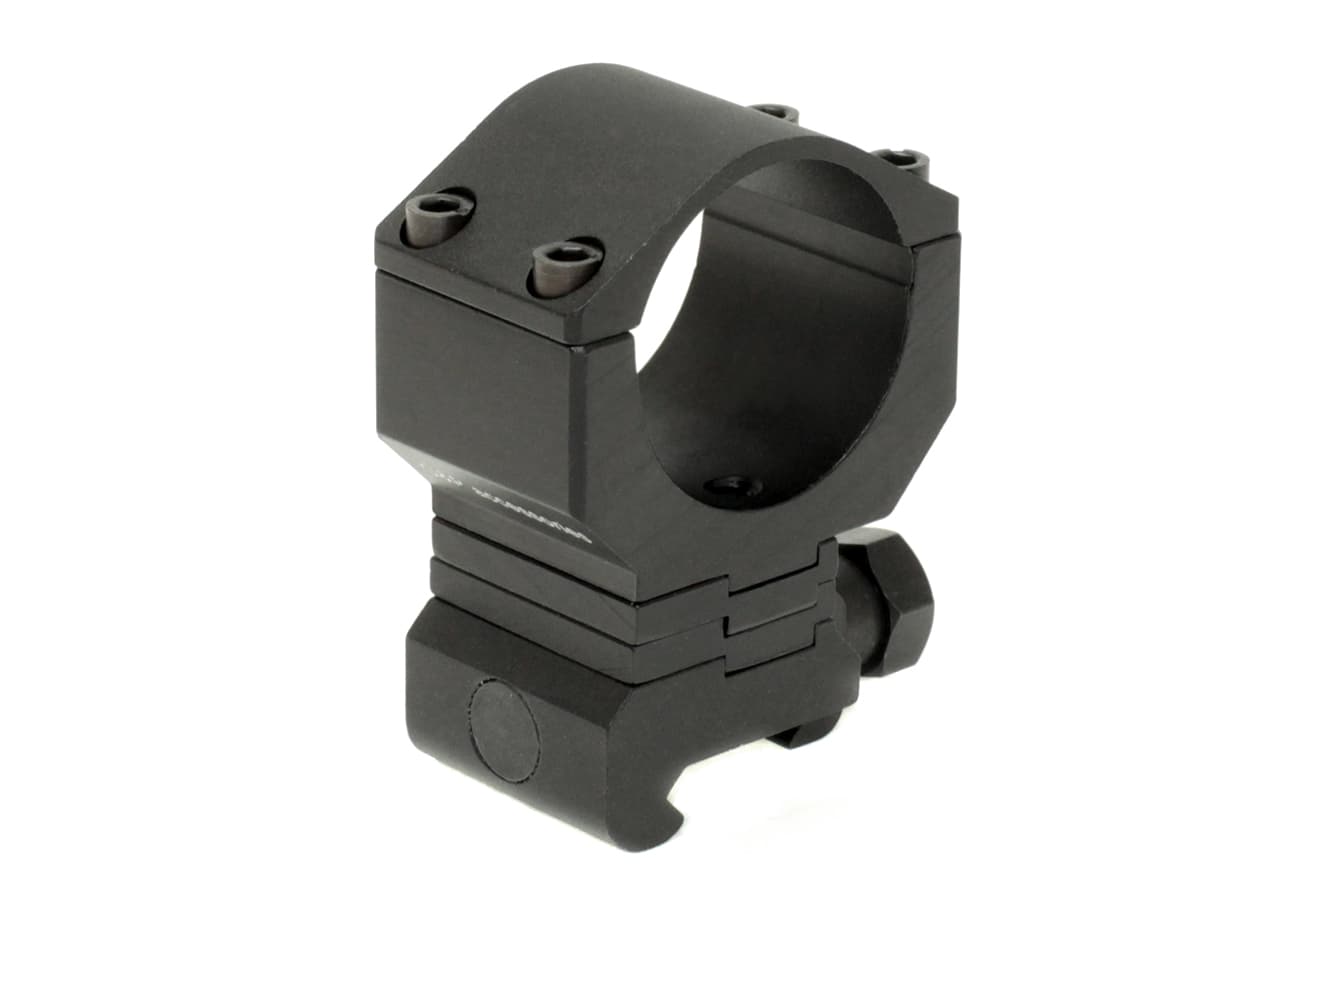 G&P KACタイプ スナイパーVer アジャスタブル 30mmリングマウント for 20mmレール [カラー：ブラック / サンド]